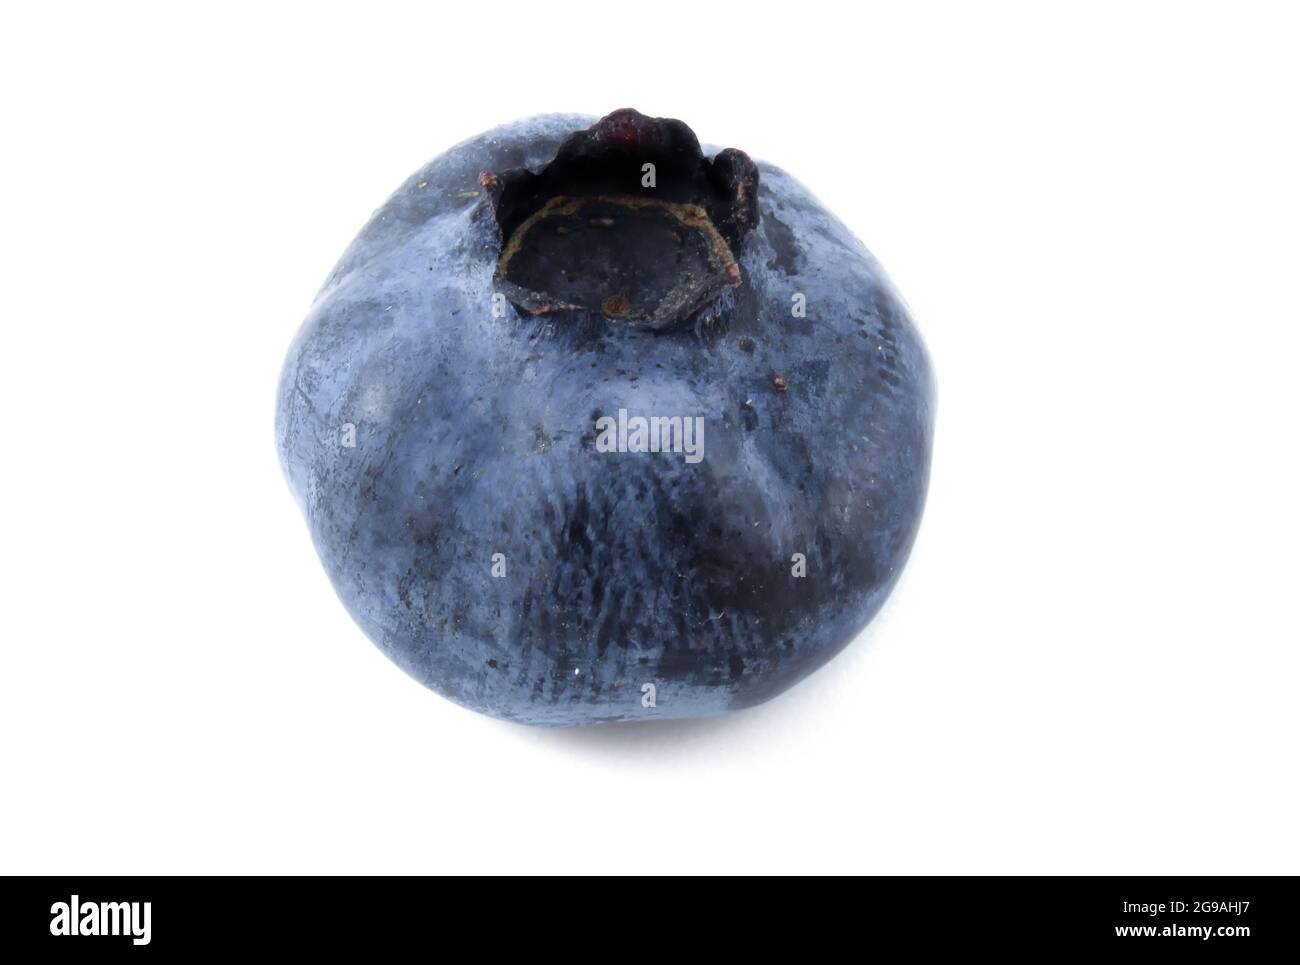 Single Blueberry Isolated on White Background. Stock Photo